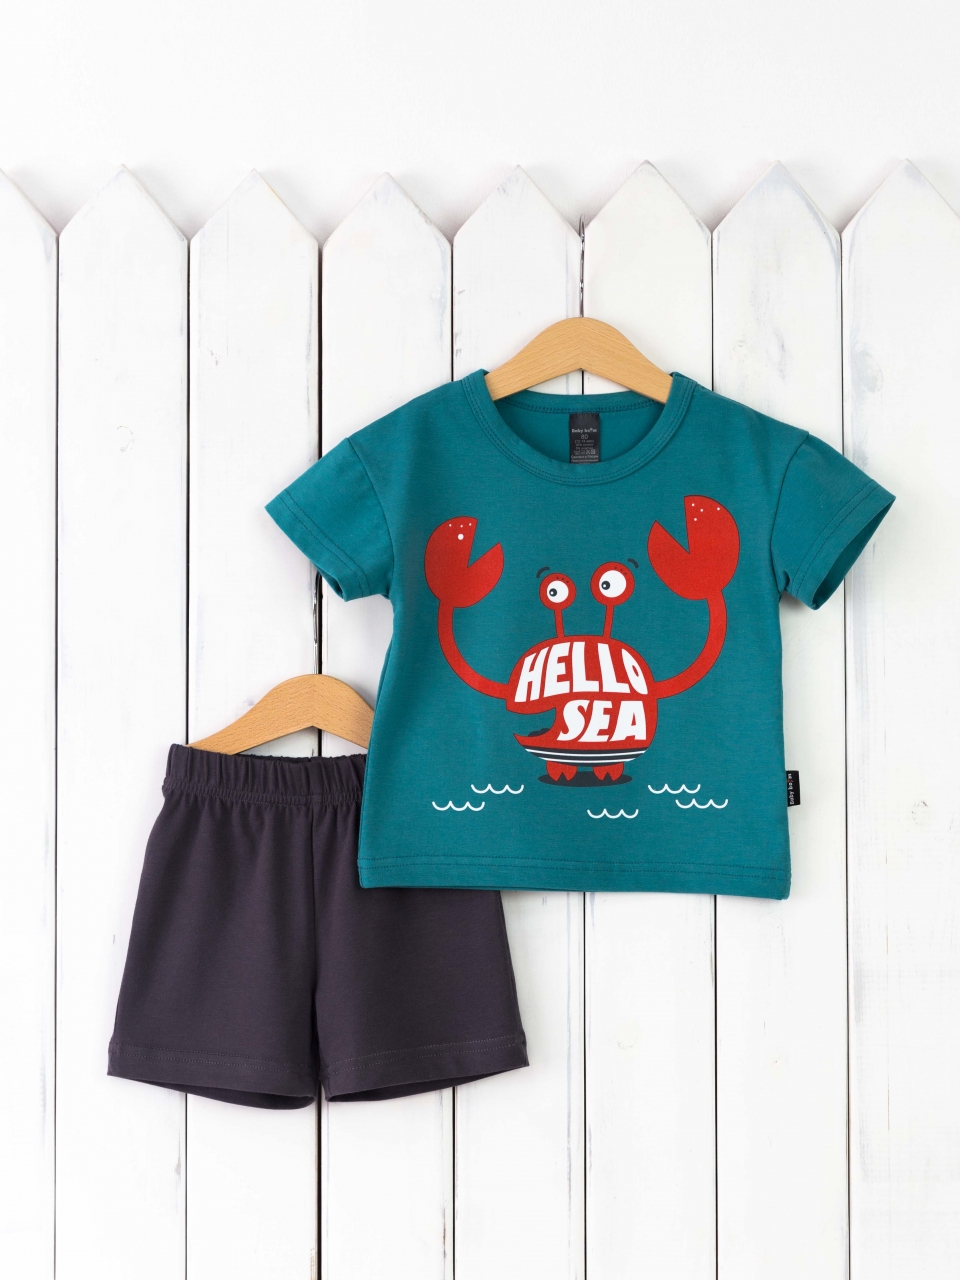 КД467/1-К Комплект р.92 футболка/морская волна+шорты графит Бэби Бум - Саранск 